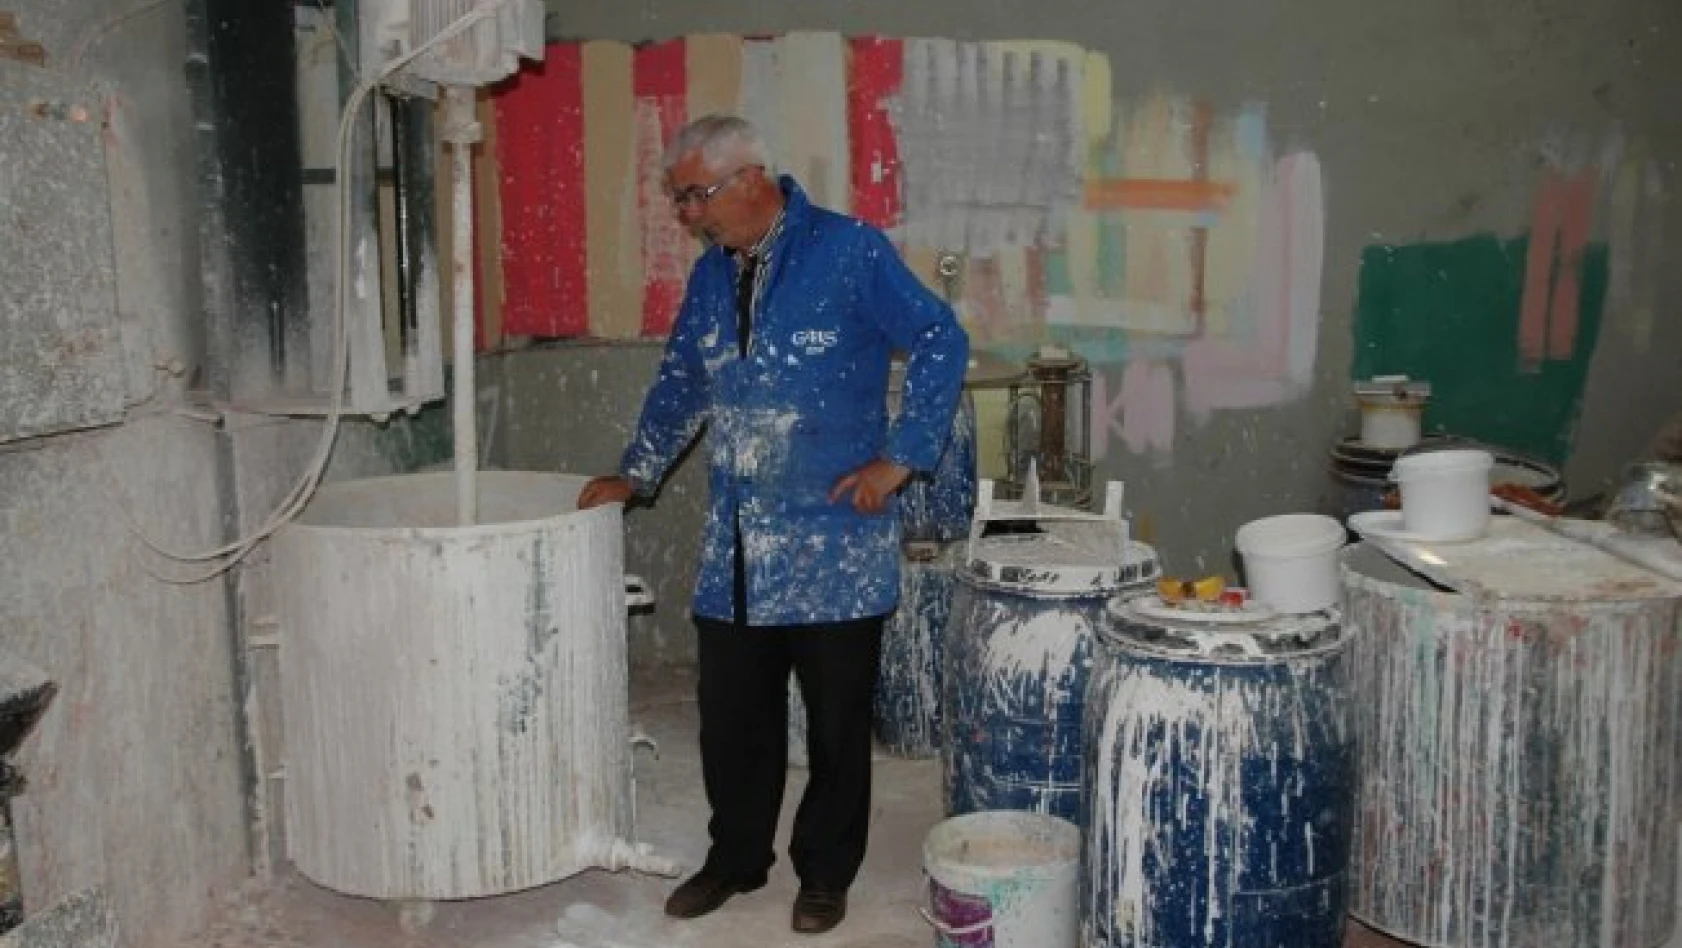 Hanönü'de boya imalathanesi açıldı